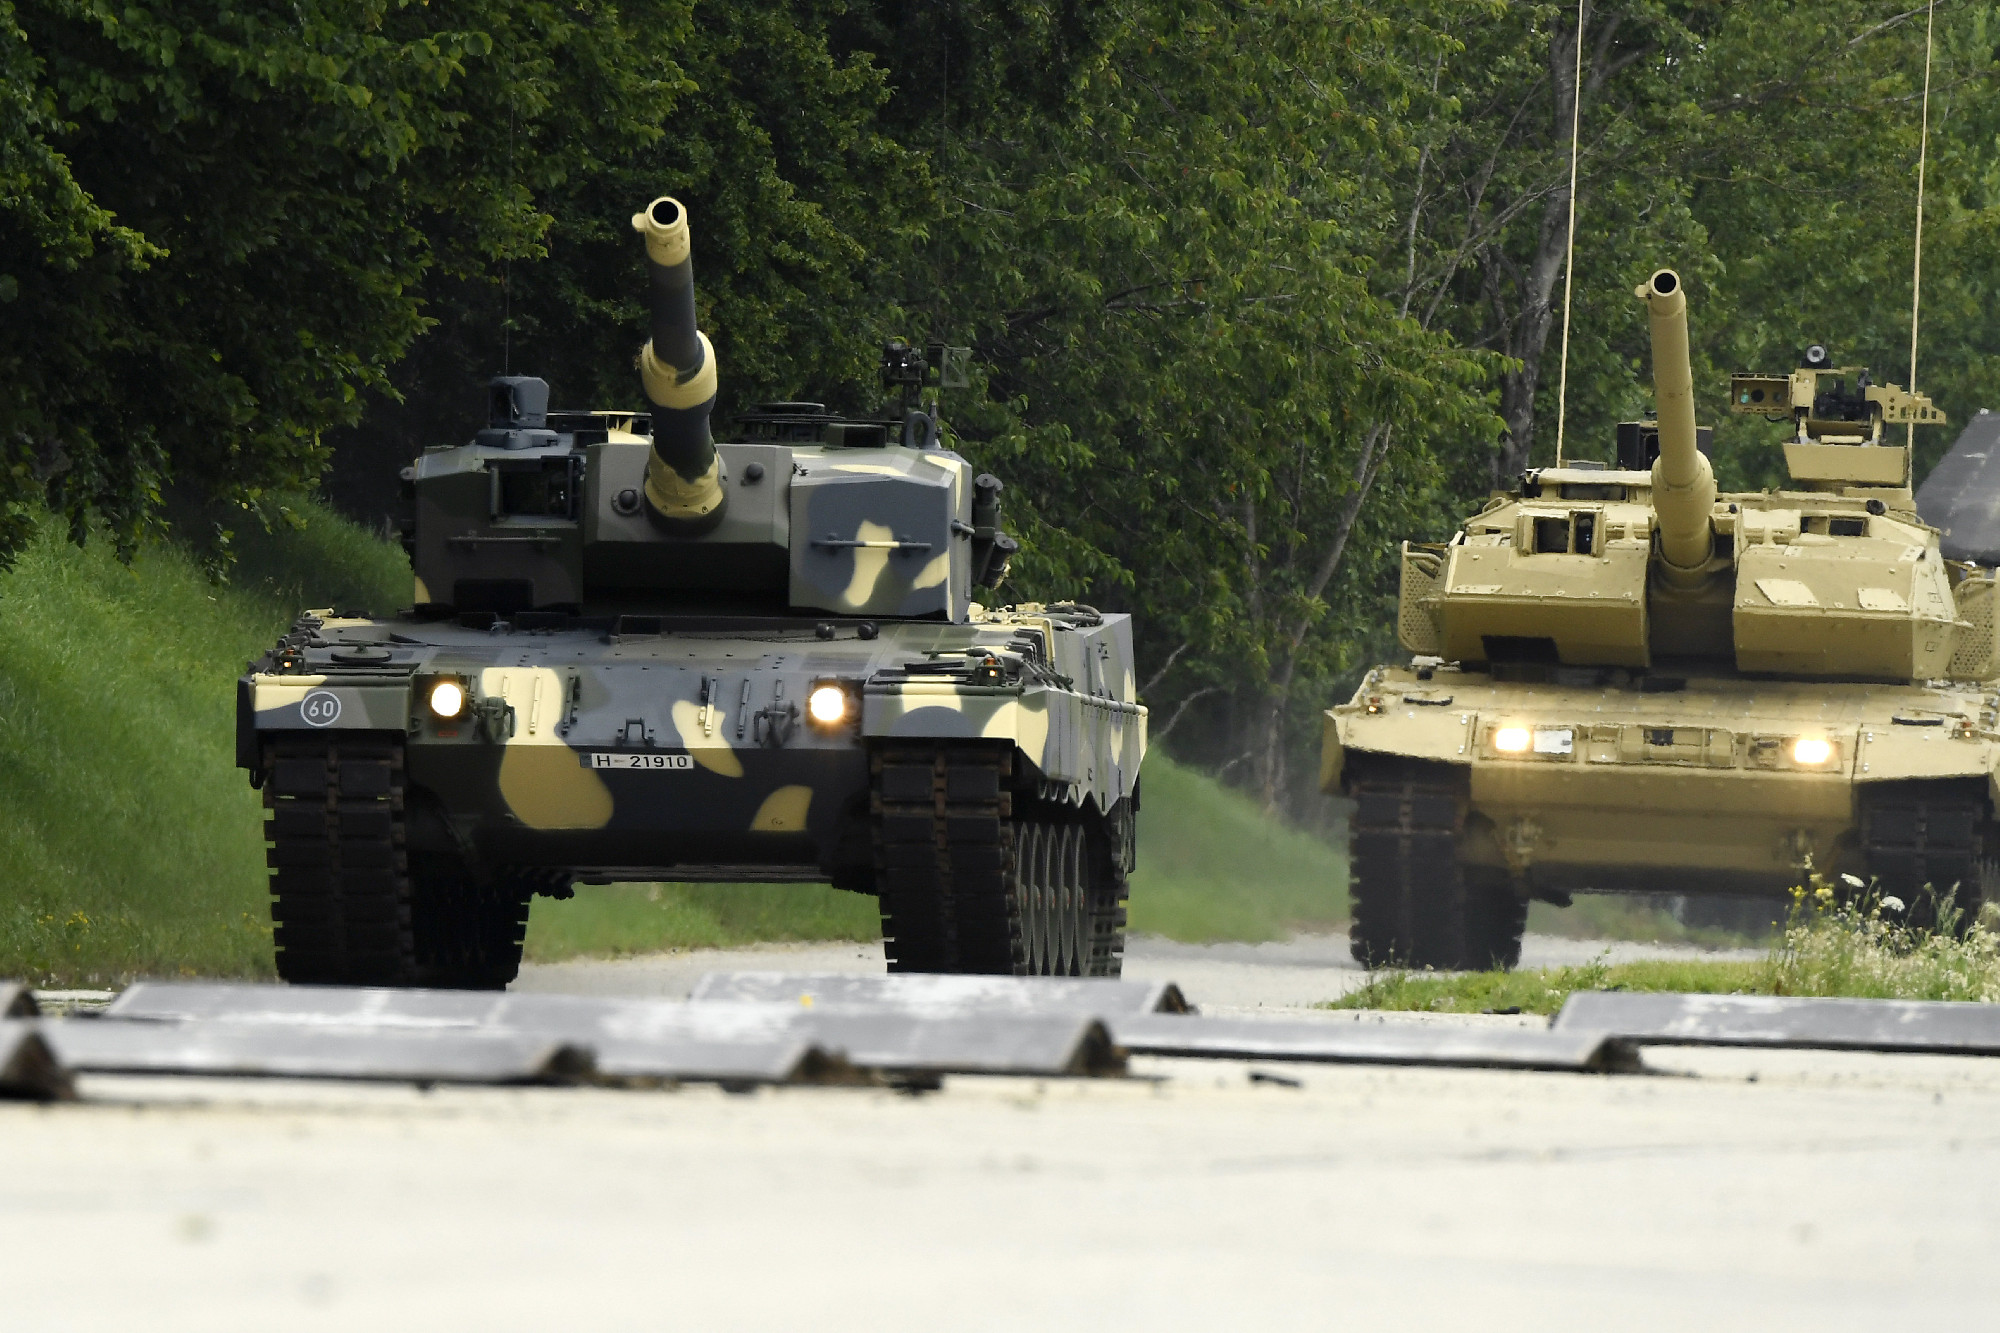 Úgy fest, Olaf Scholz tényleg átadja a Leopard tankokat Ukrajnának